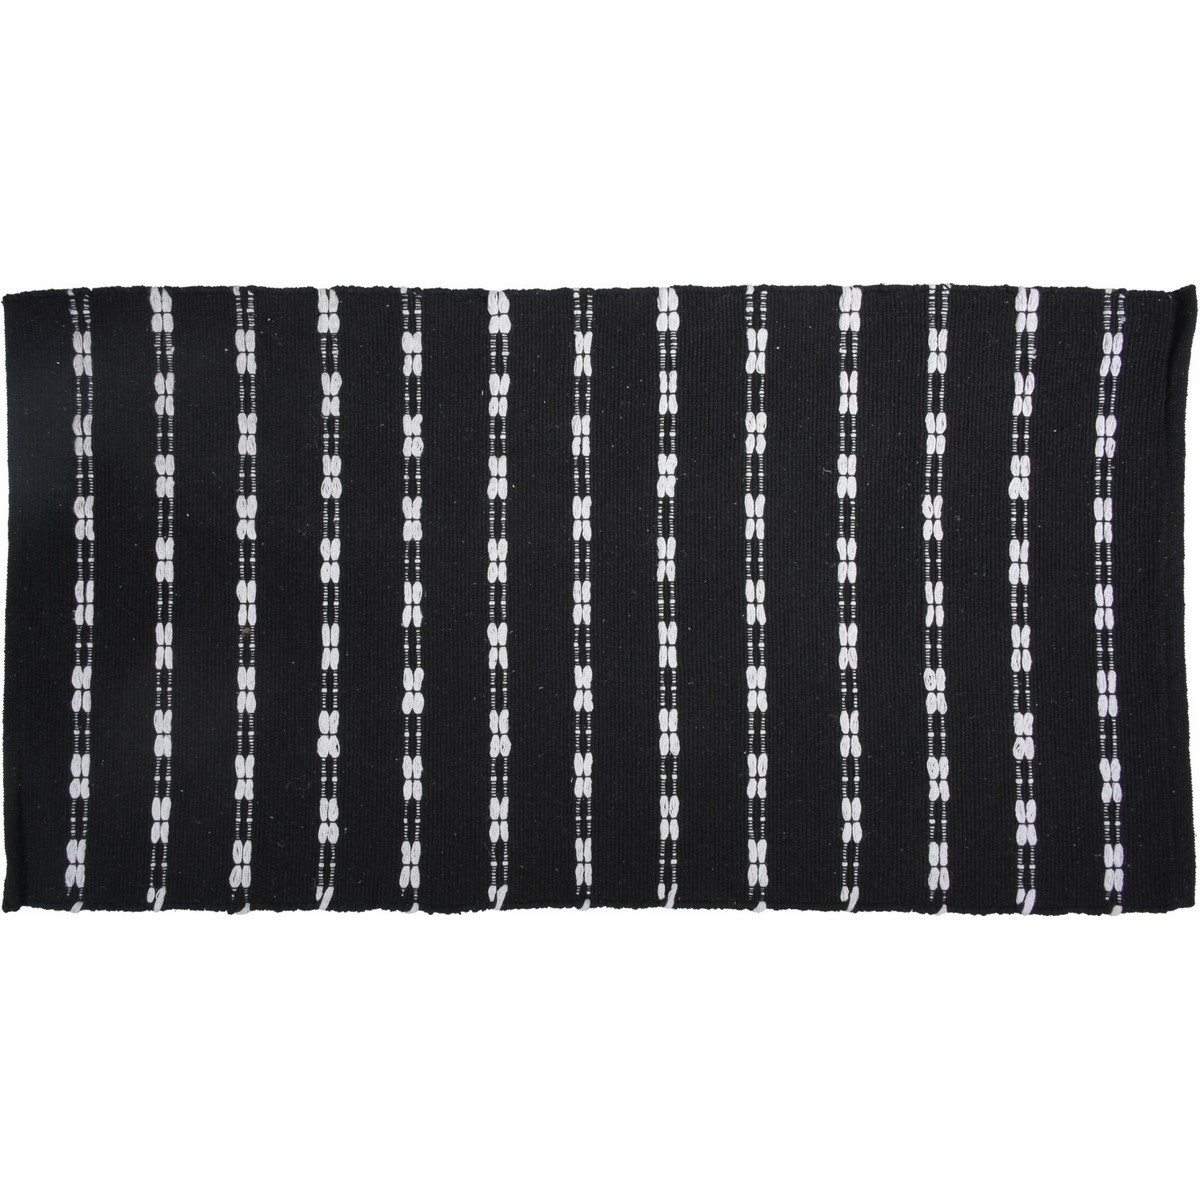 Dywan pikowany czarny, 70 x 140 cm